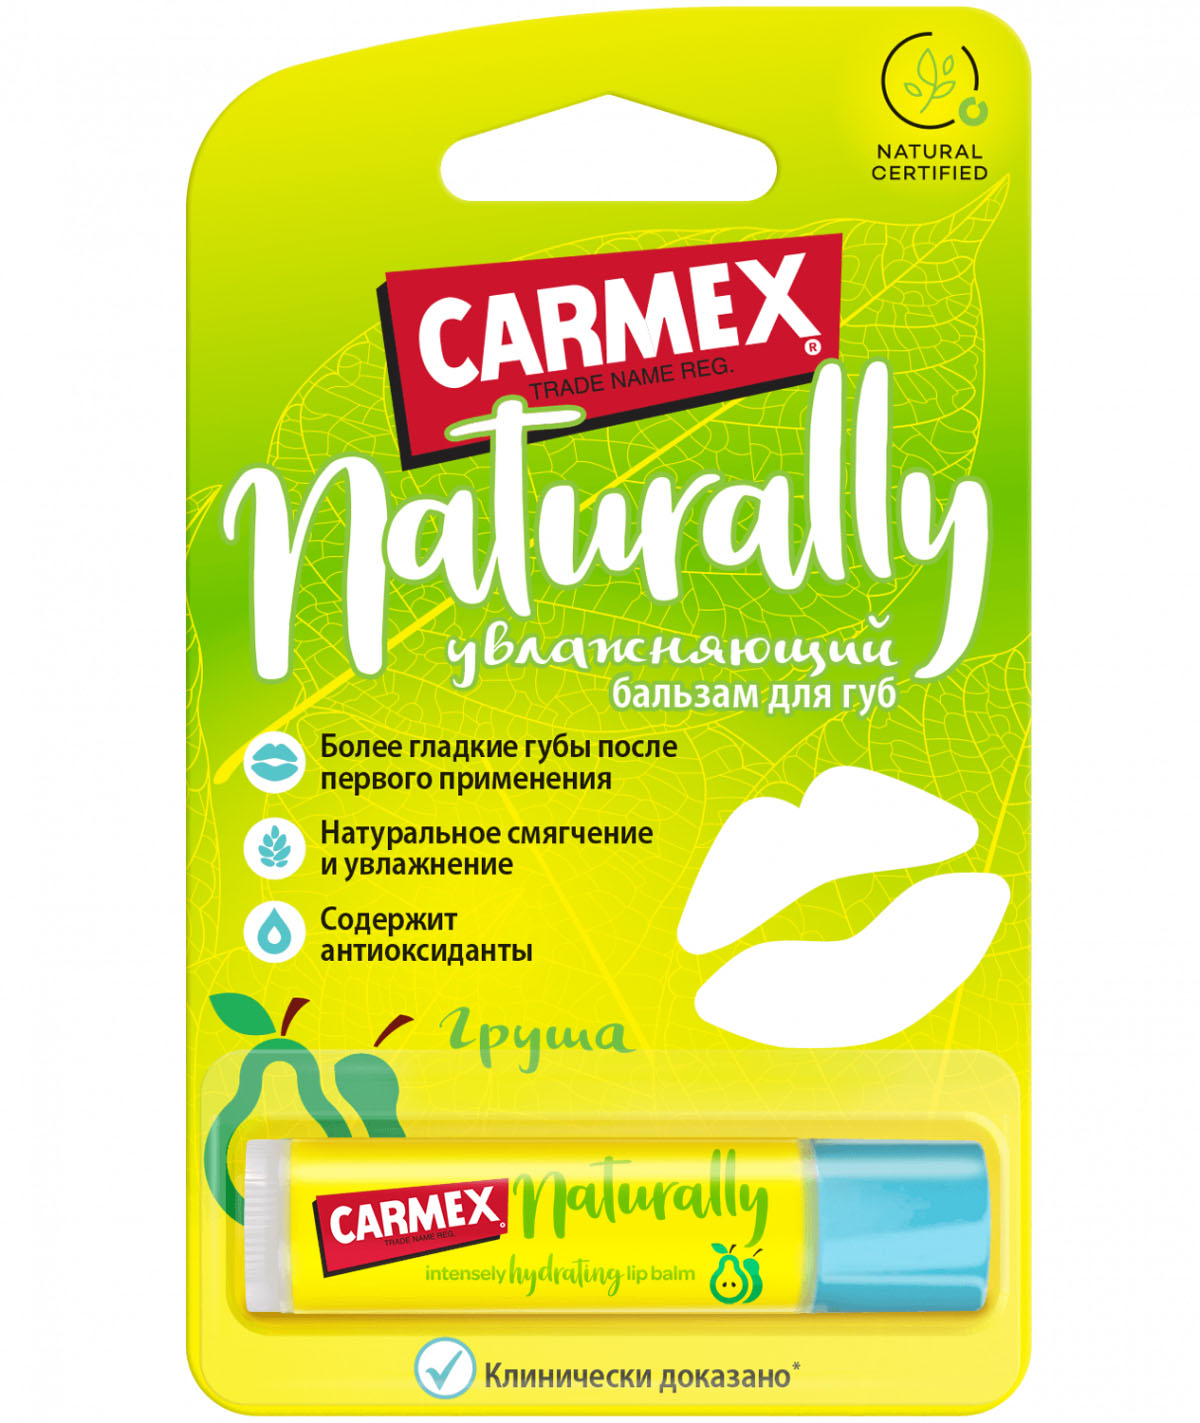 Купить Carmex Натуральный бальзам для губ с ароматом груши в стике, 4.25 гр (Carmex, Naturally), США